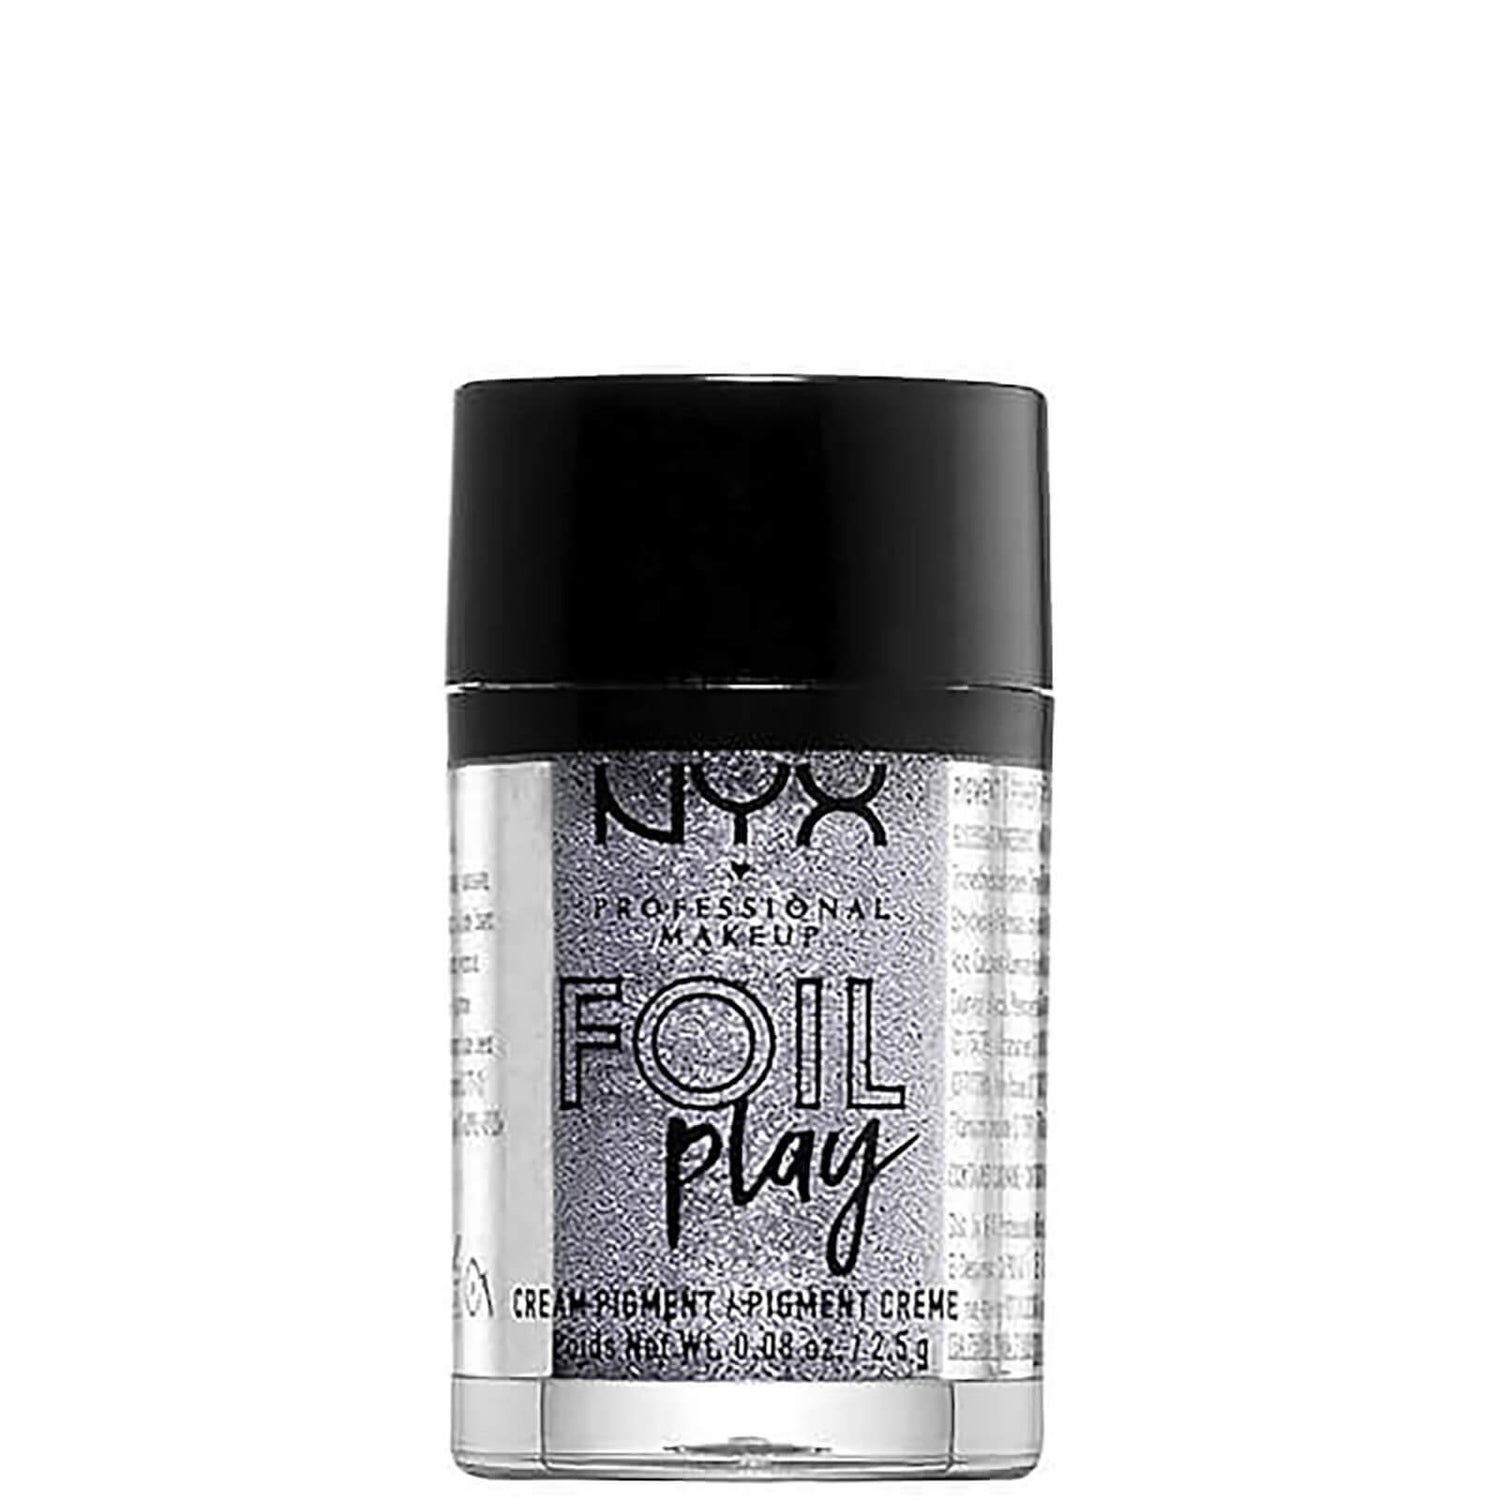 NYX Professional Makeup Foil Play Cream Pigment Eyeshadow (verschiedene Farbtöne)